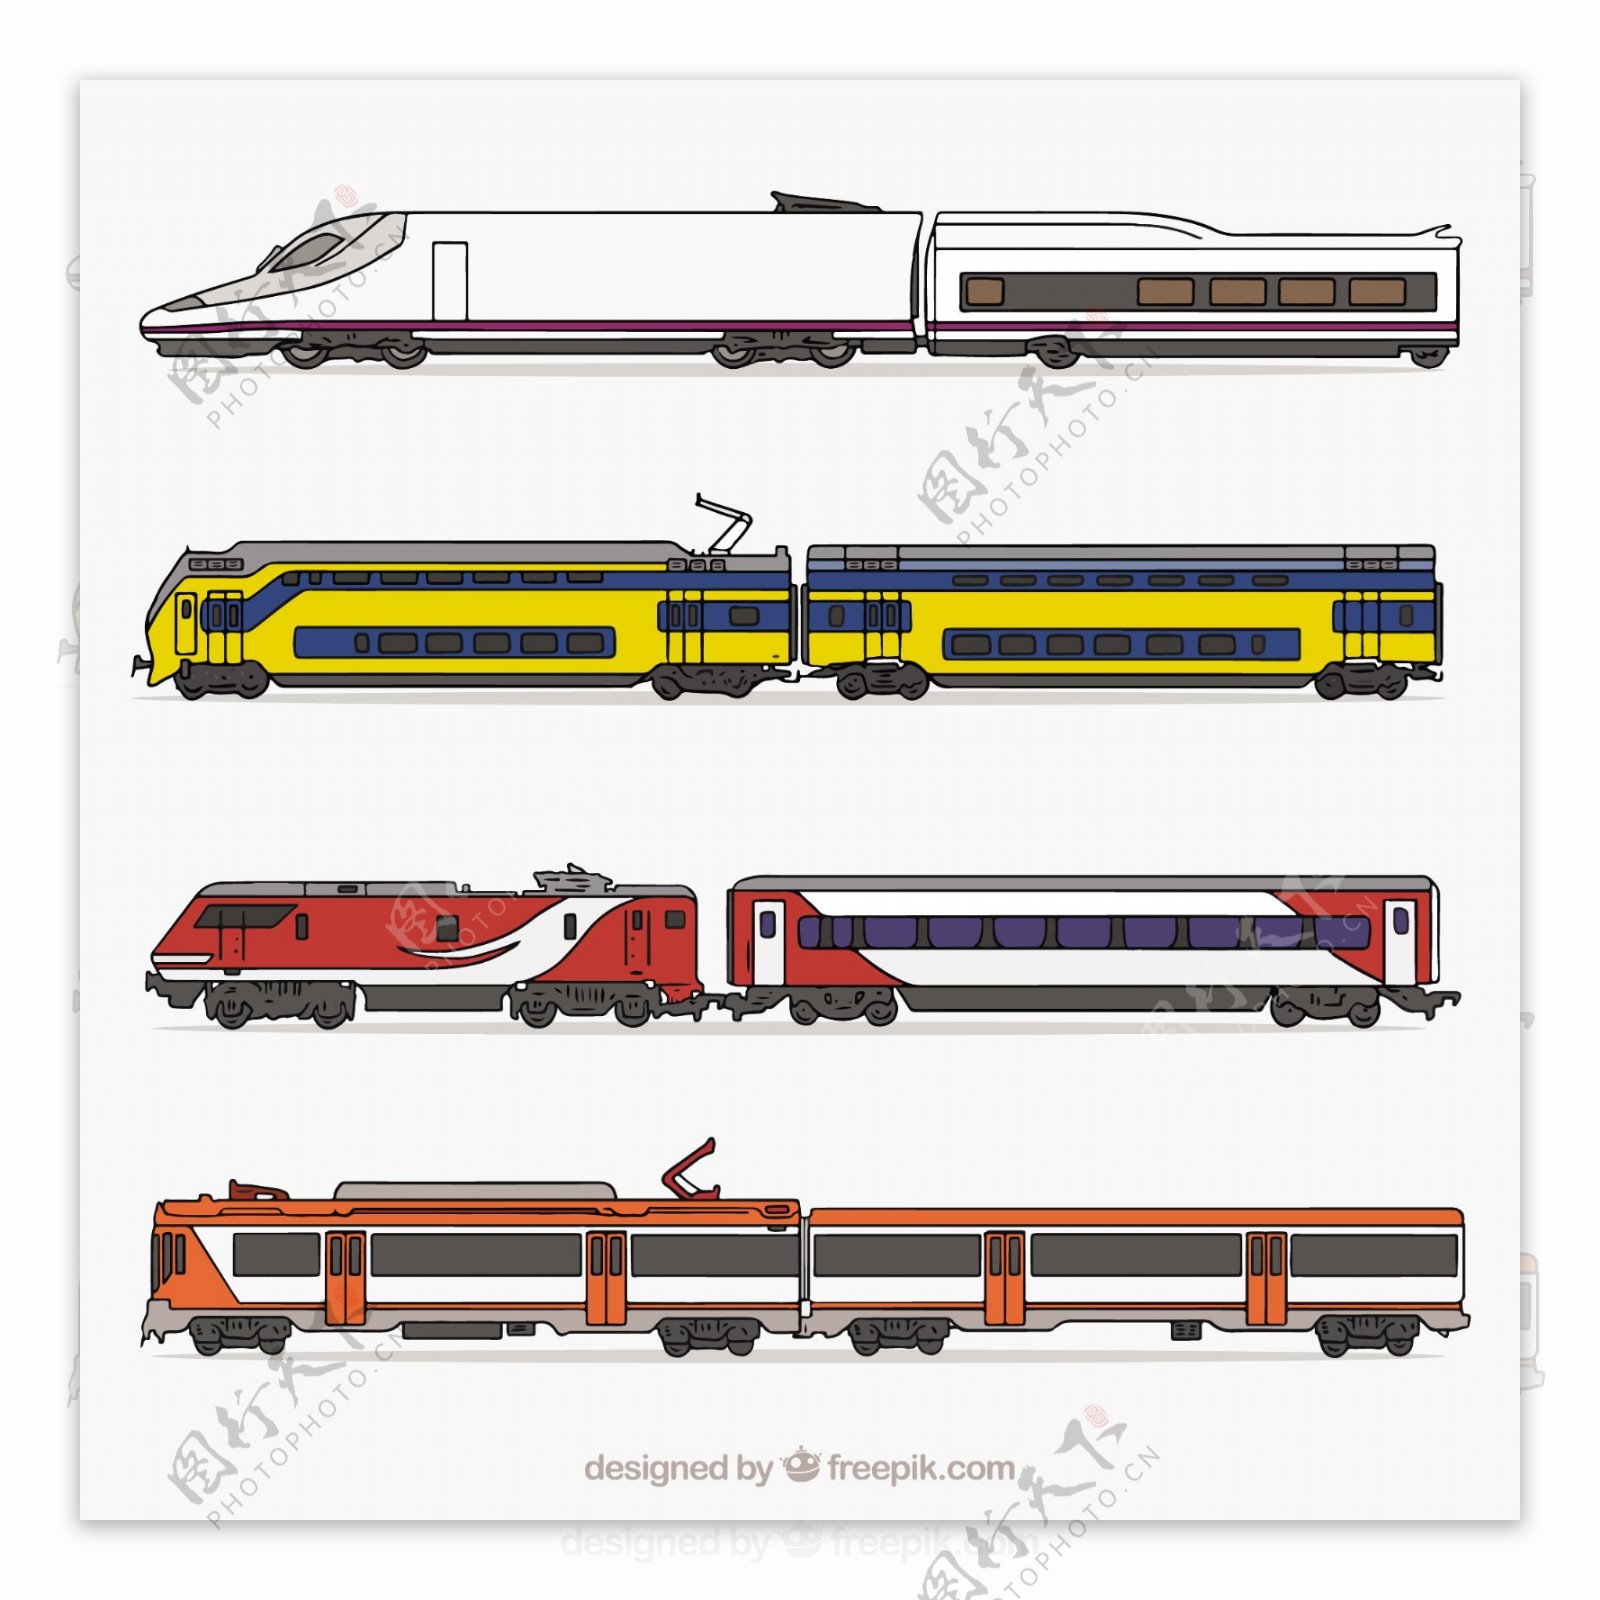 手绘各种火车机车高铁插图